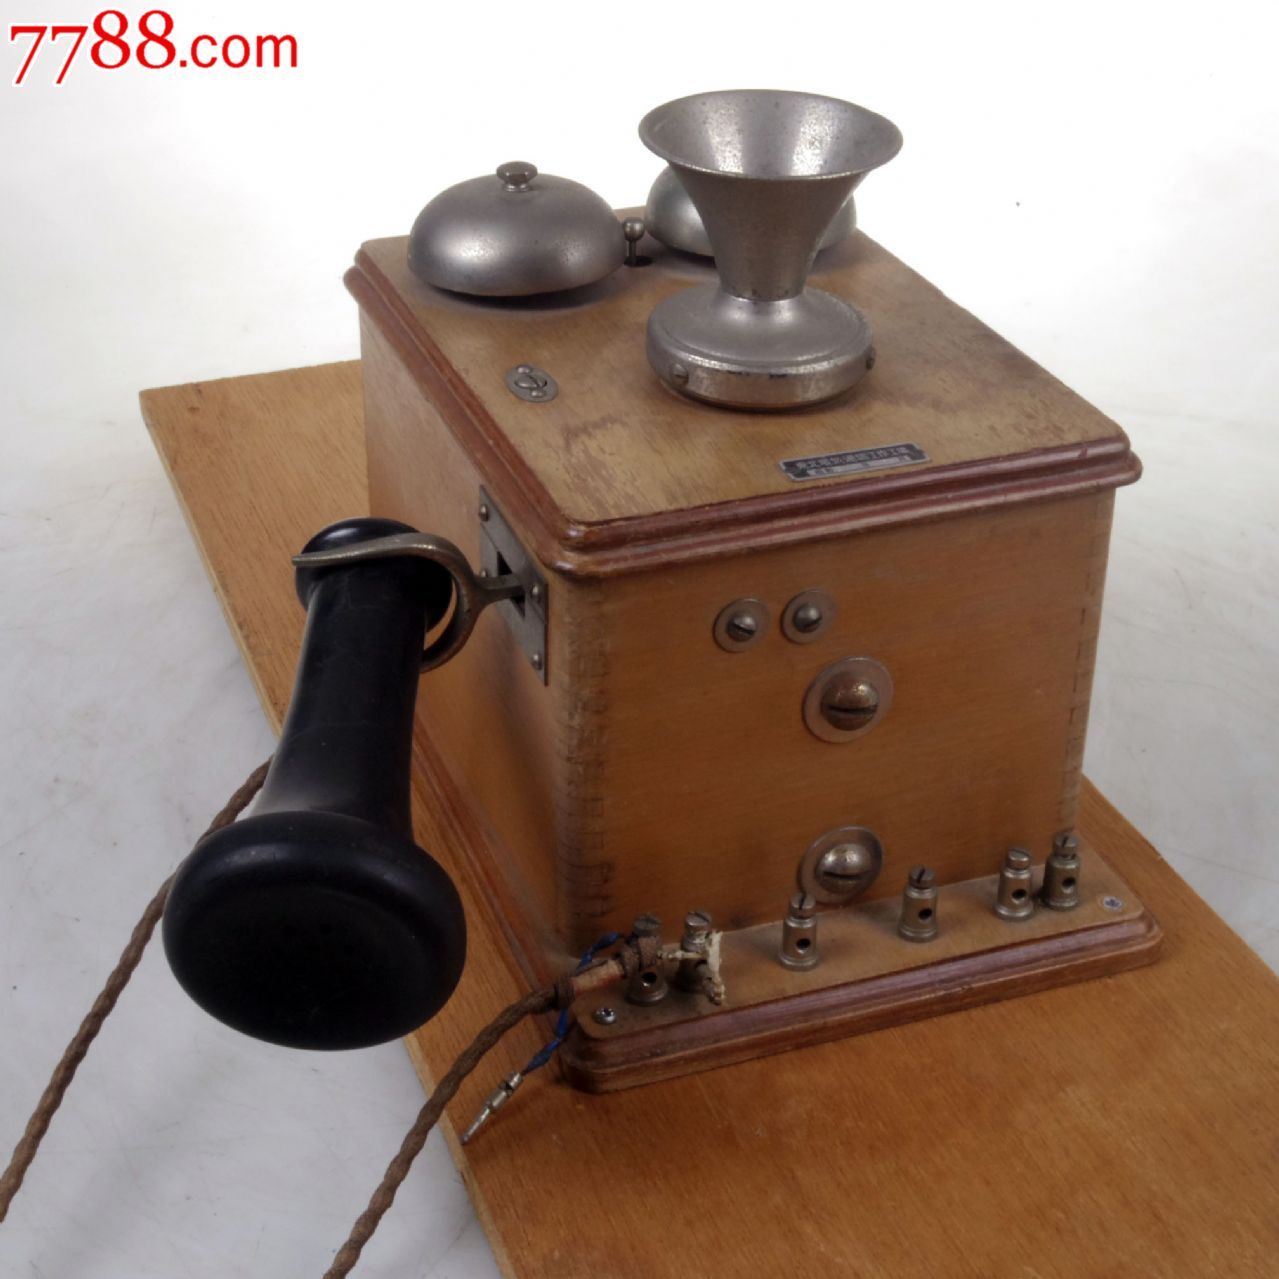 老物件日本东北电气通信壁挂式手摇电话机1950年代9品